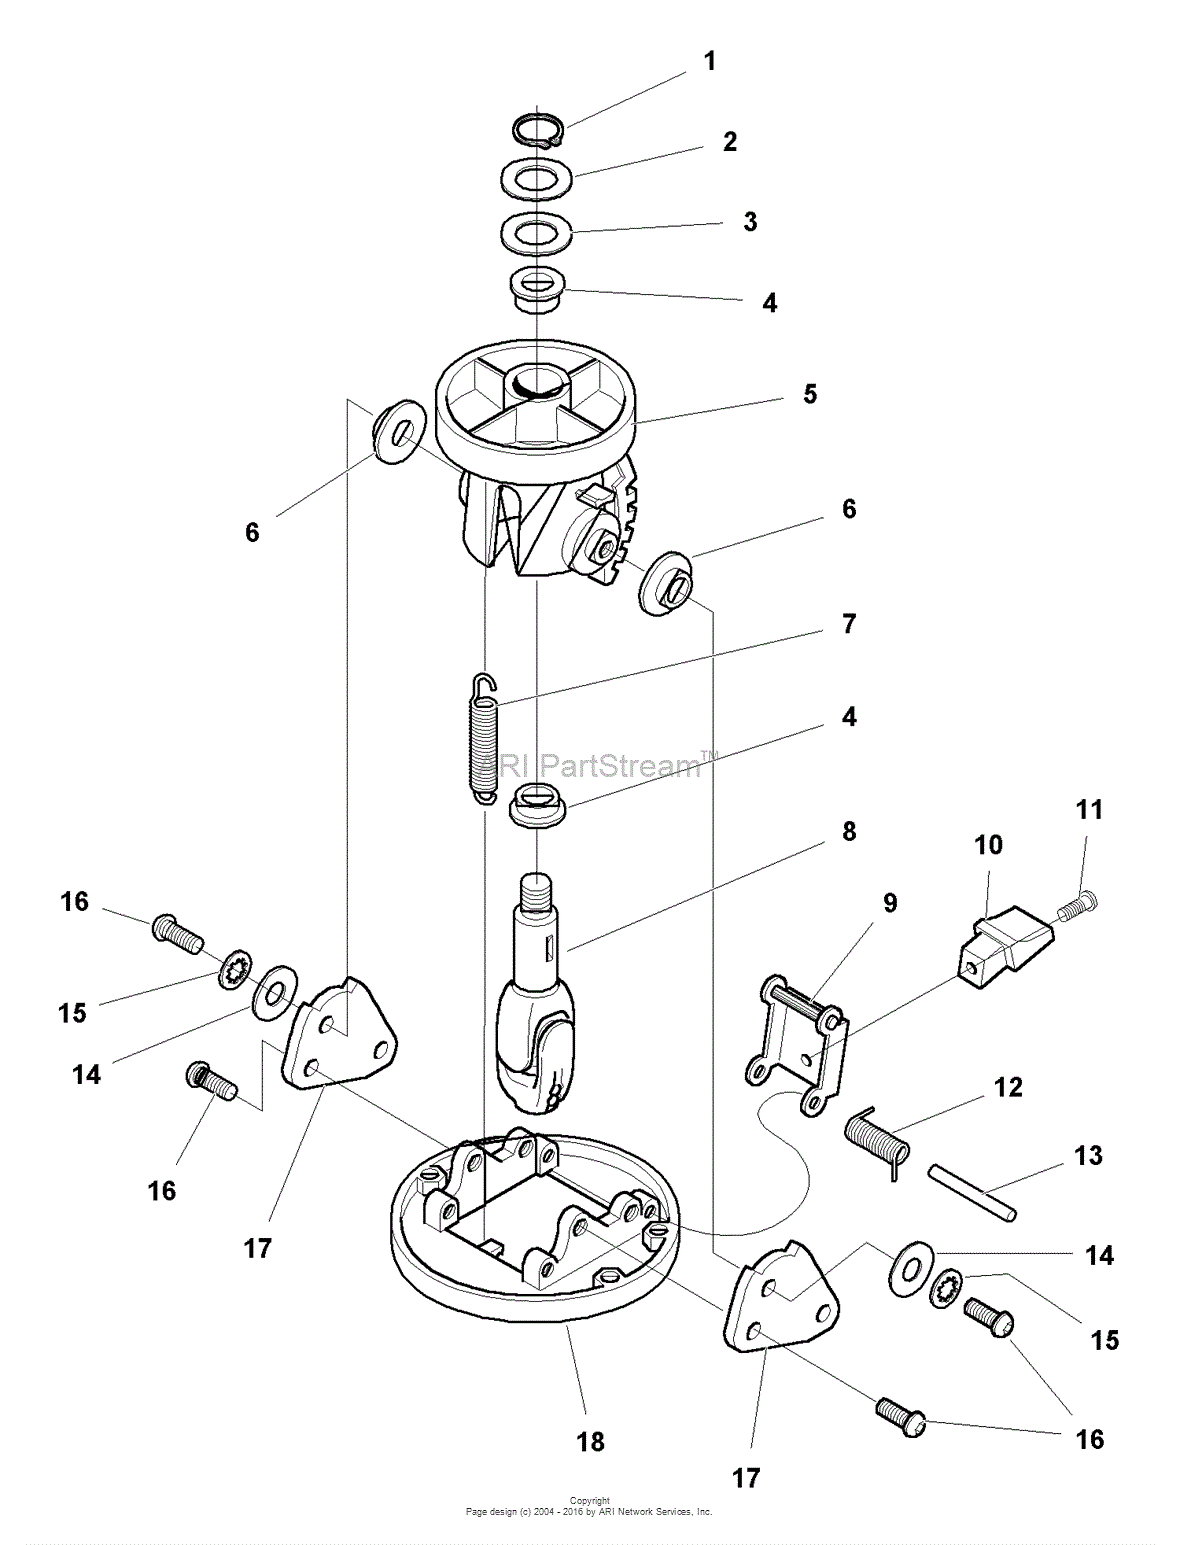 wiring diagram for an intek v-twin 20 horsepower motor